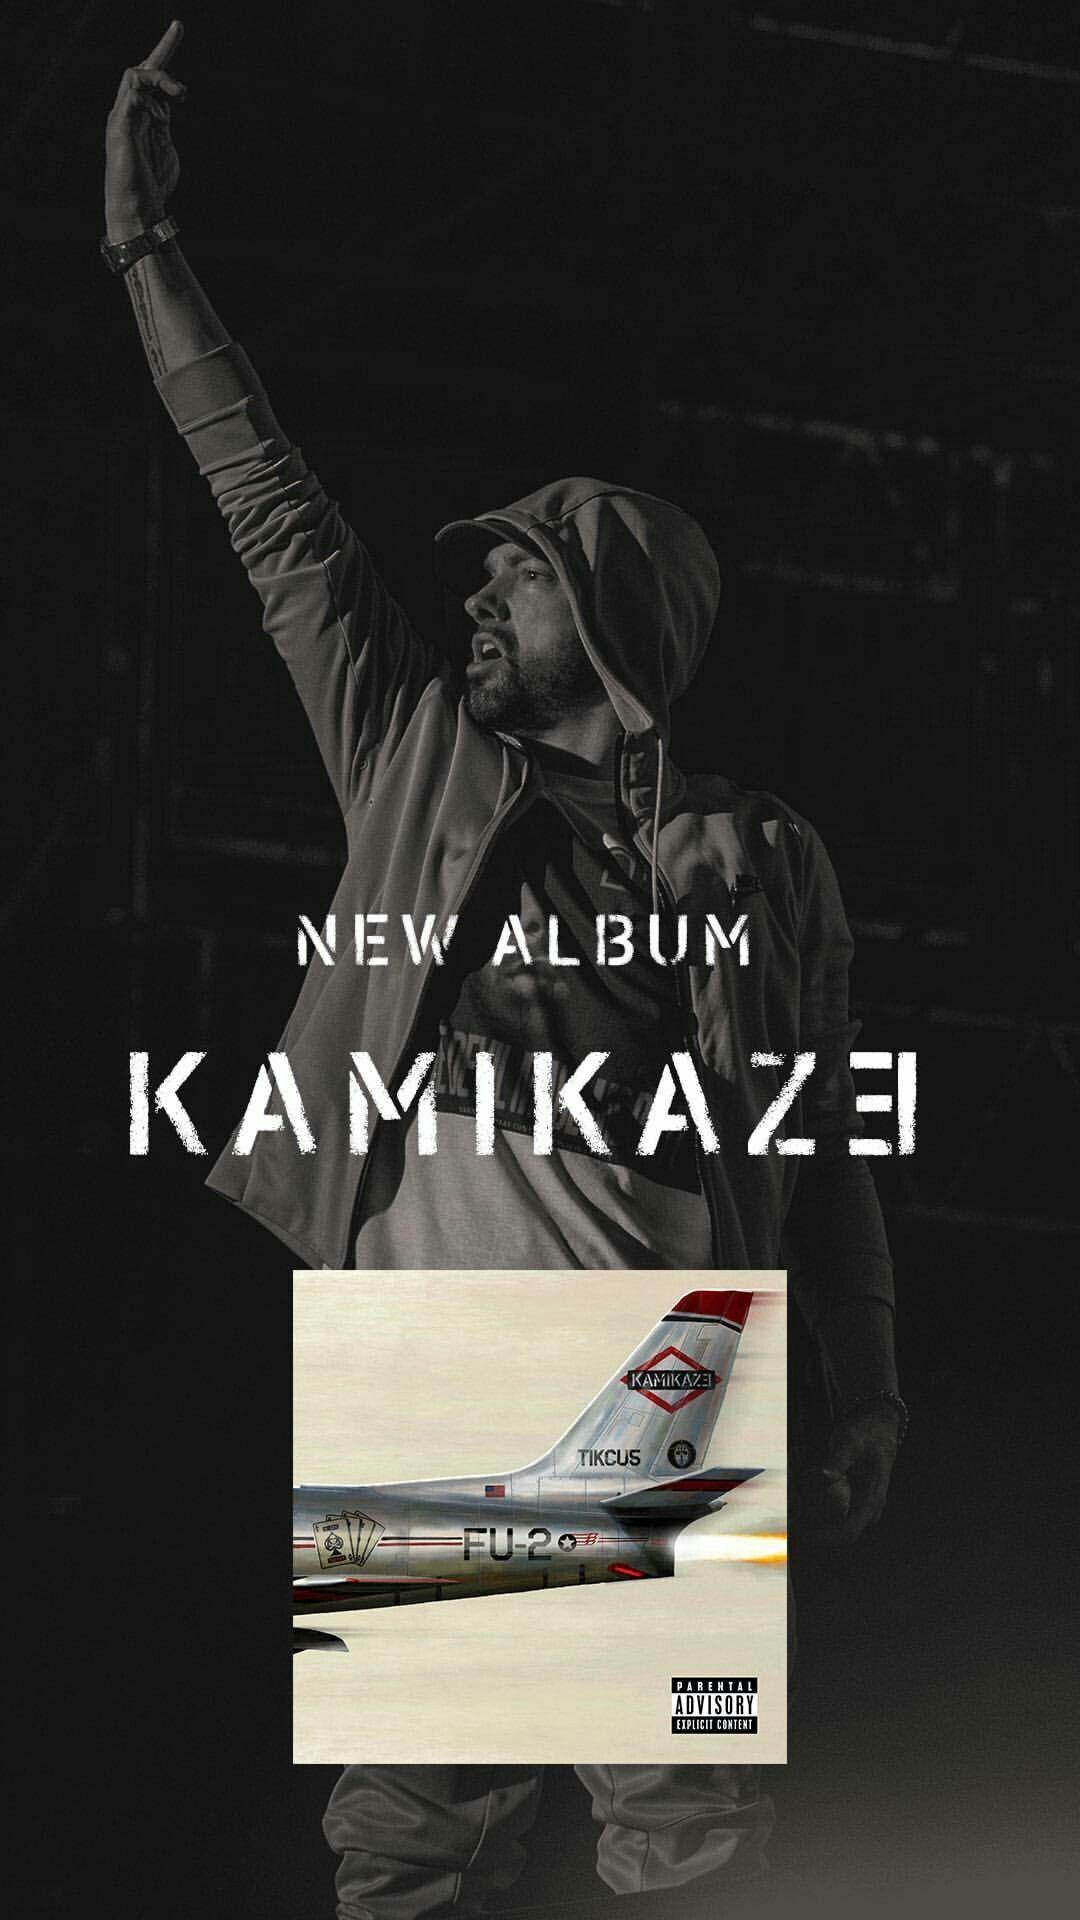 Eminem's record breaking surprise album release, Kamikaze took